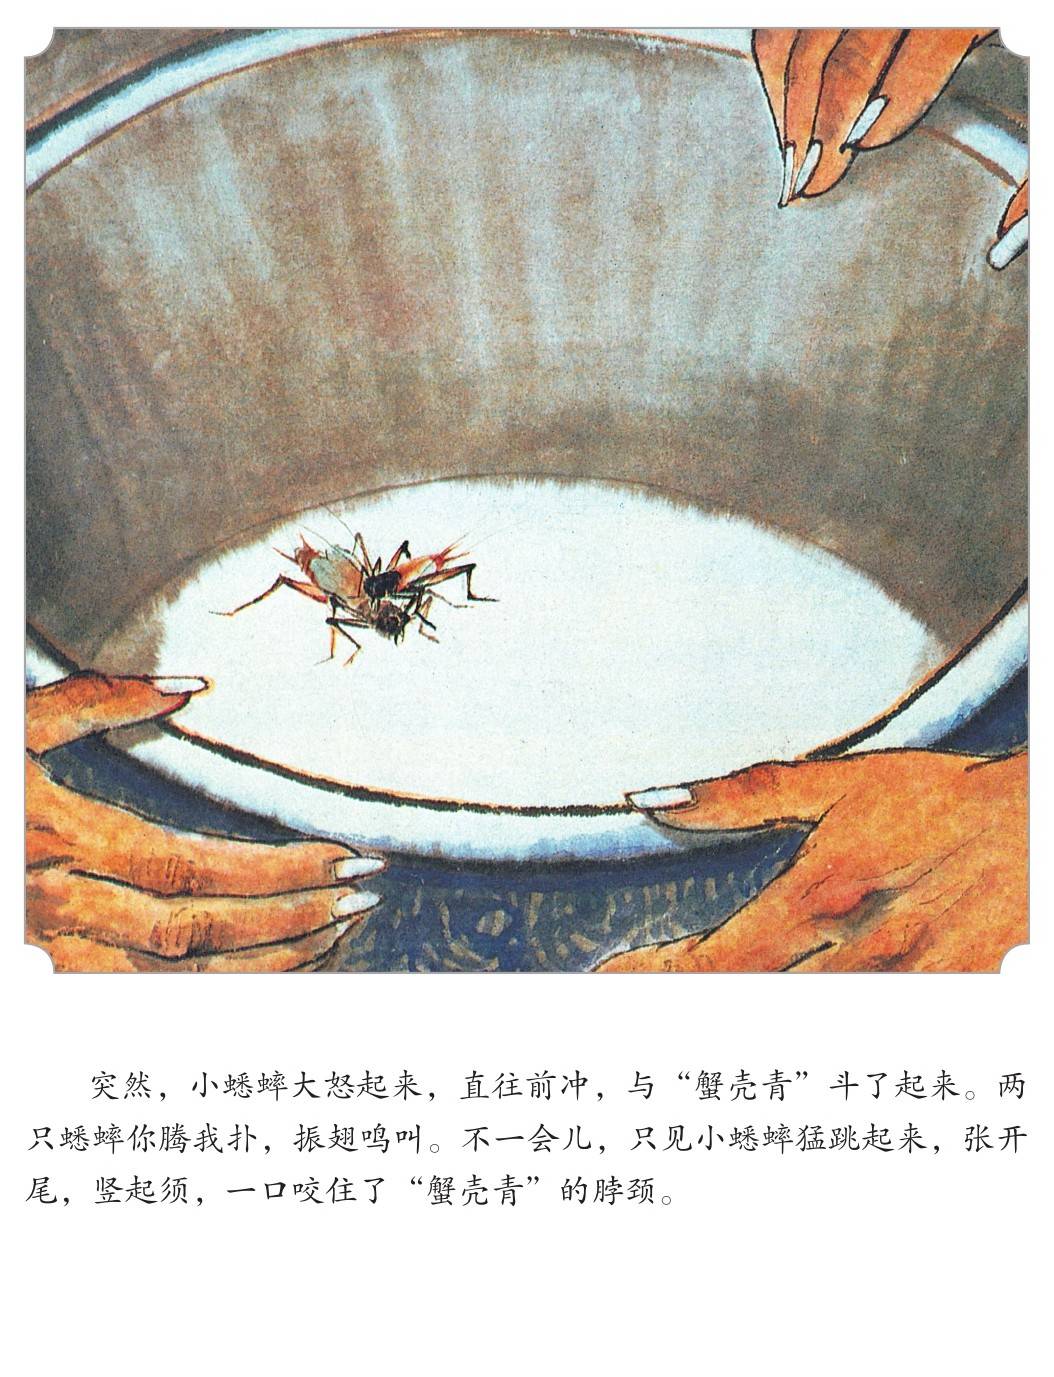 蟋蟀故事忆虫王图片